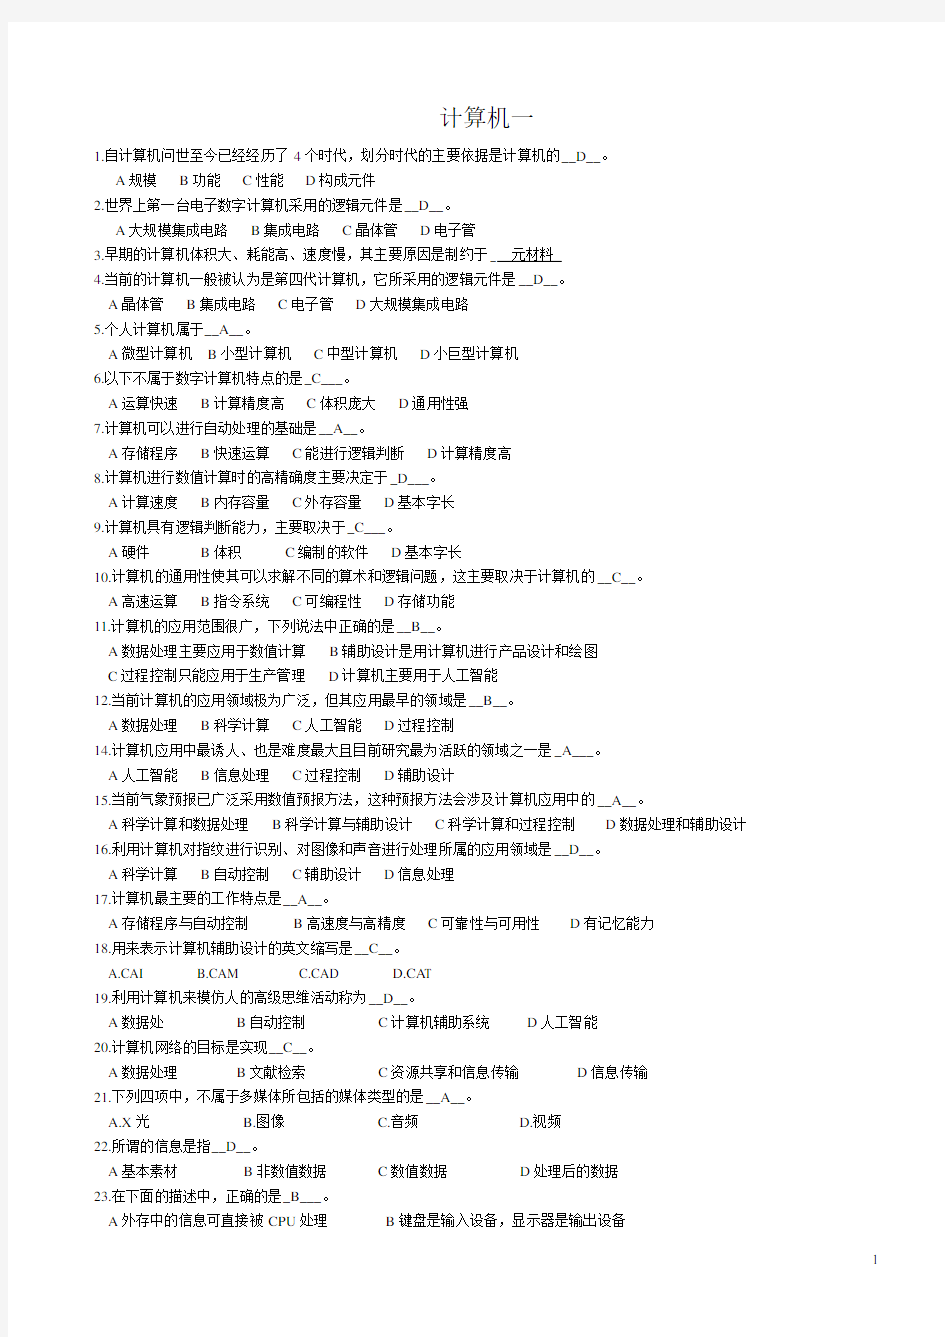 北京师范大学计算机应用基础作业一、二、三、四、五、六、七、八、九全题